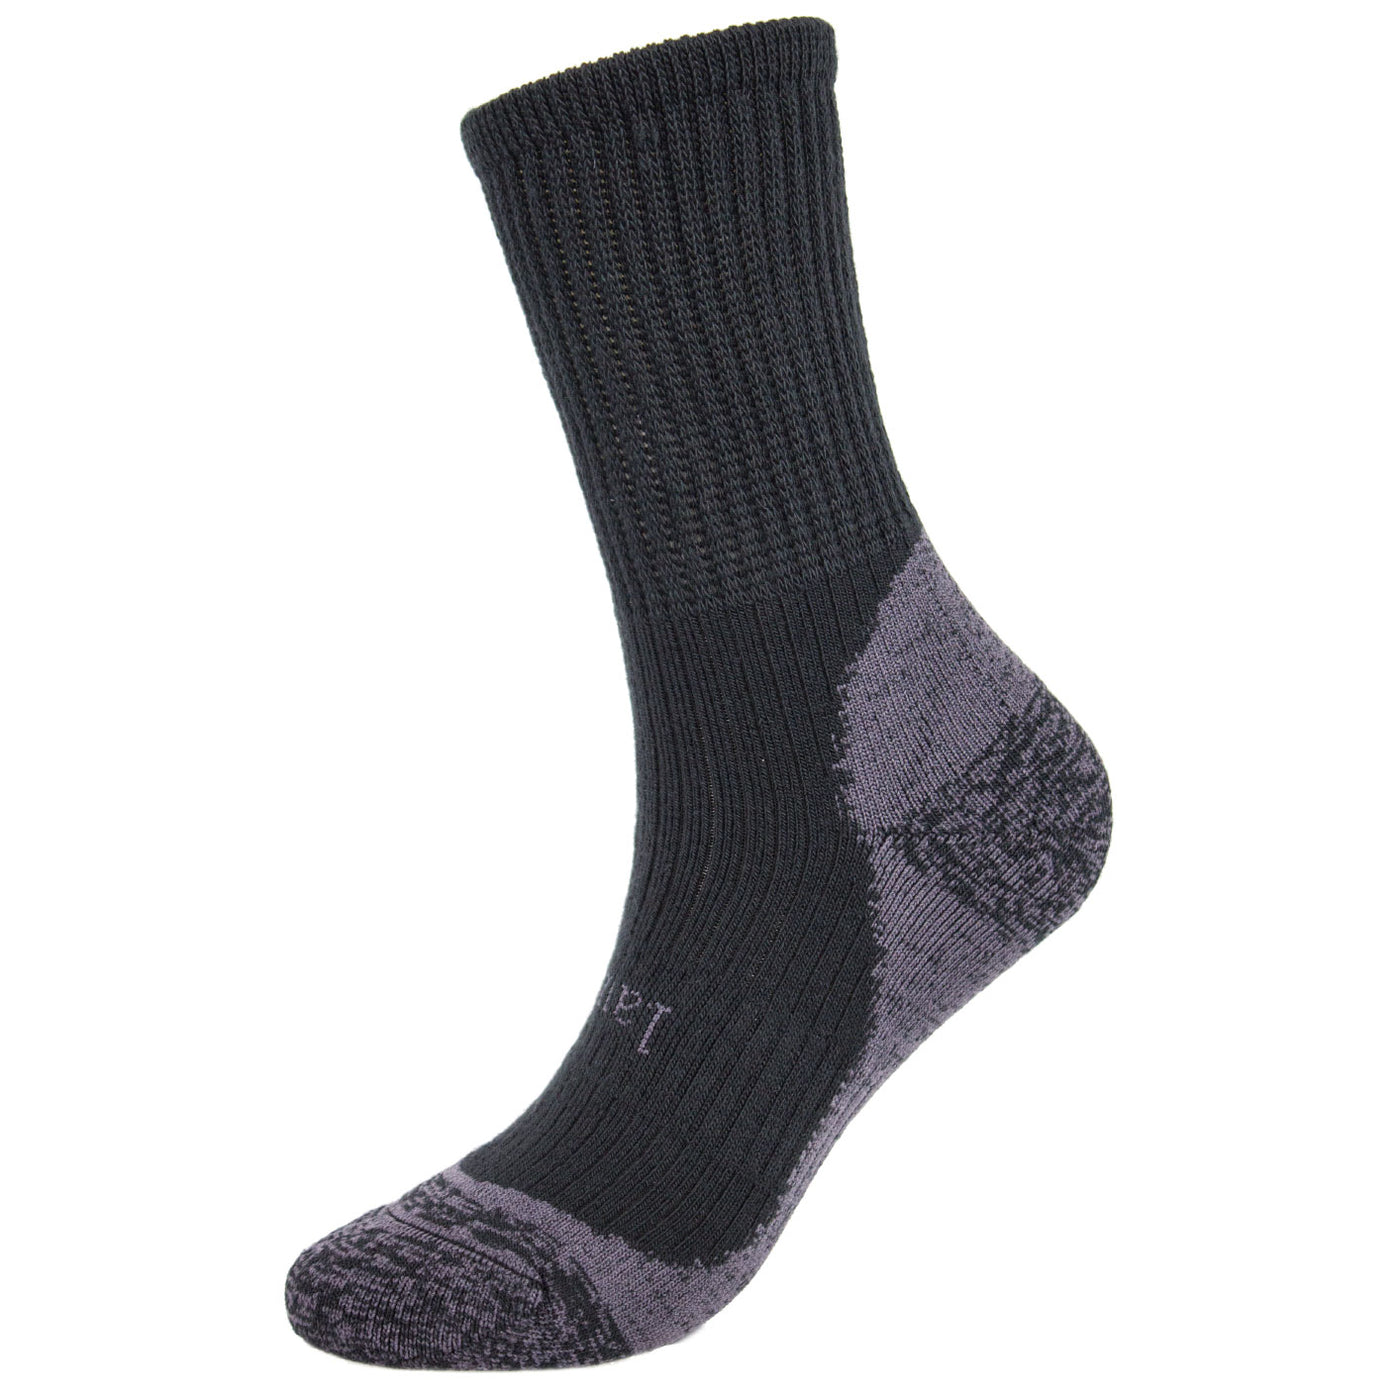 Laulax Ladies finest wool loos top gentle grip winter socks, 3 Pairs Gift Set in 2 designs